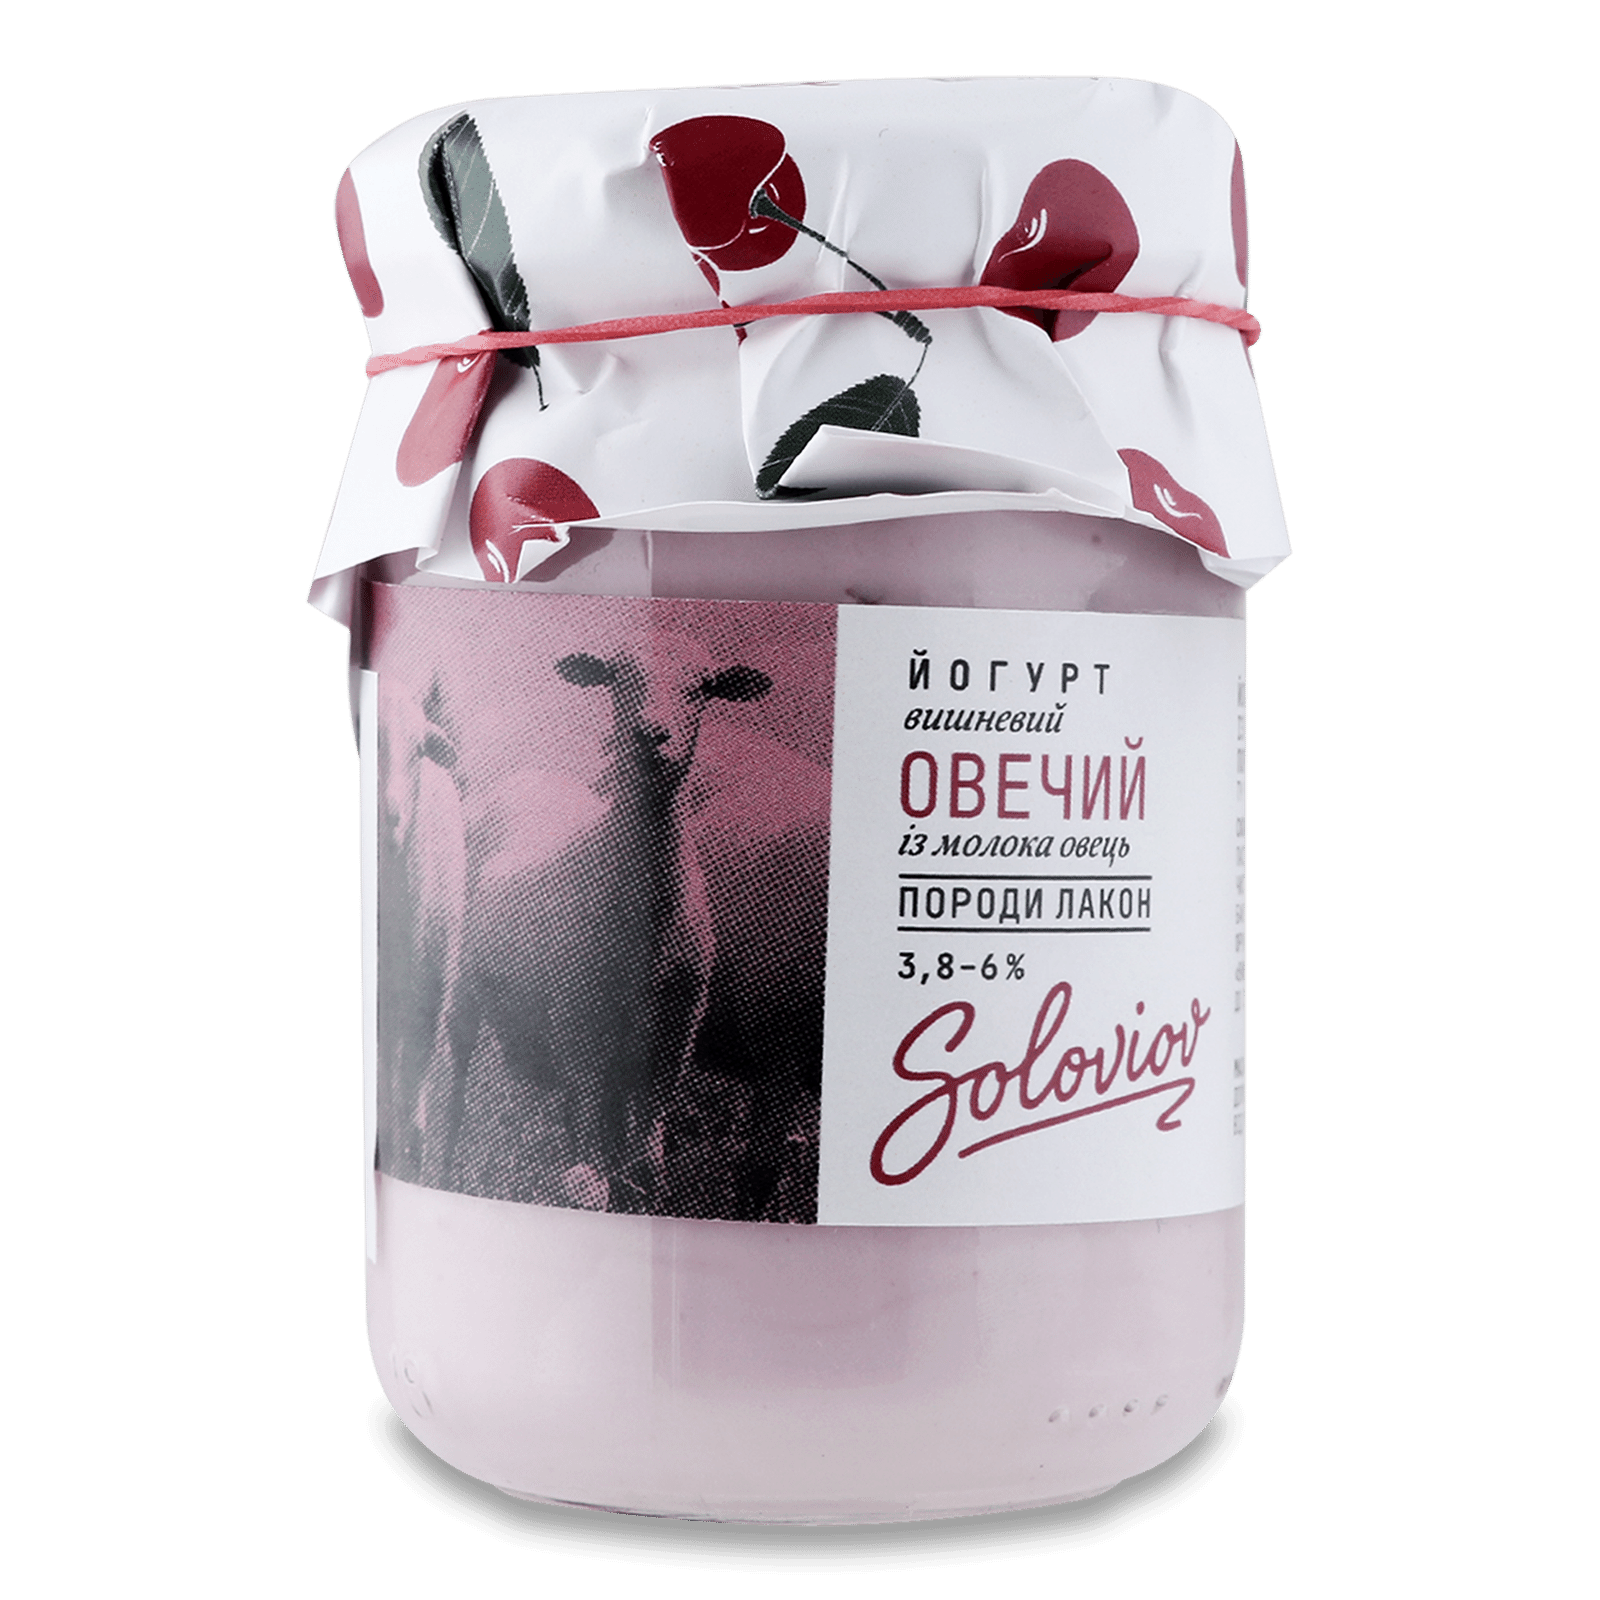 Йогурт «Лавка традицій» Soloviov Овечий вишневий 3,8-6% - 1